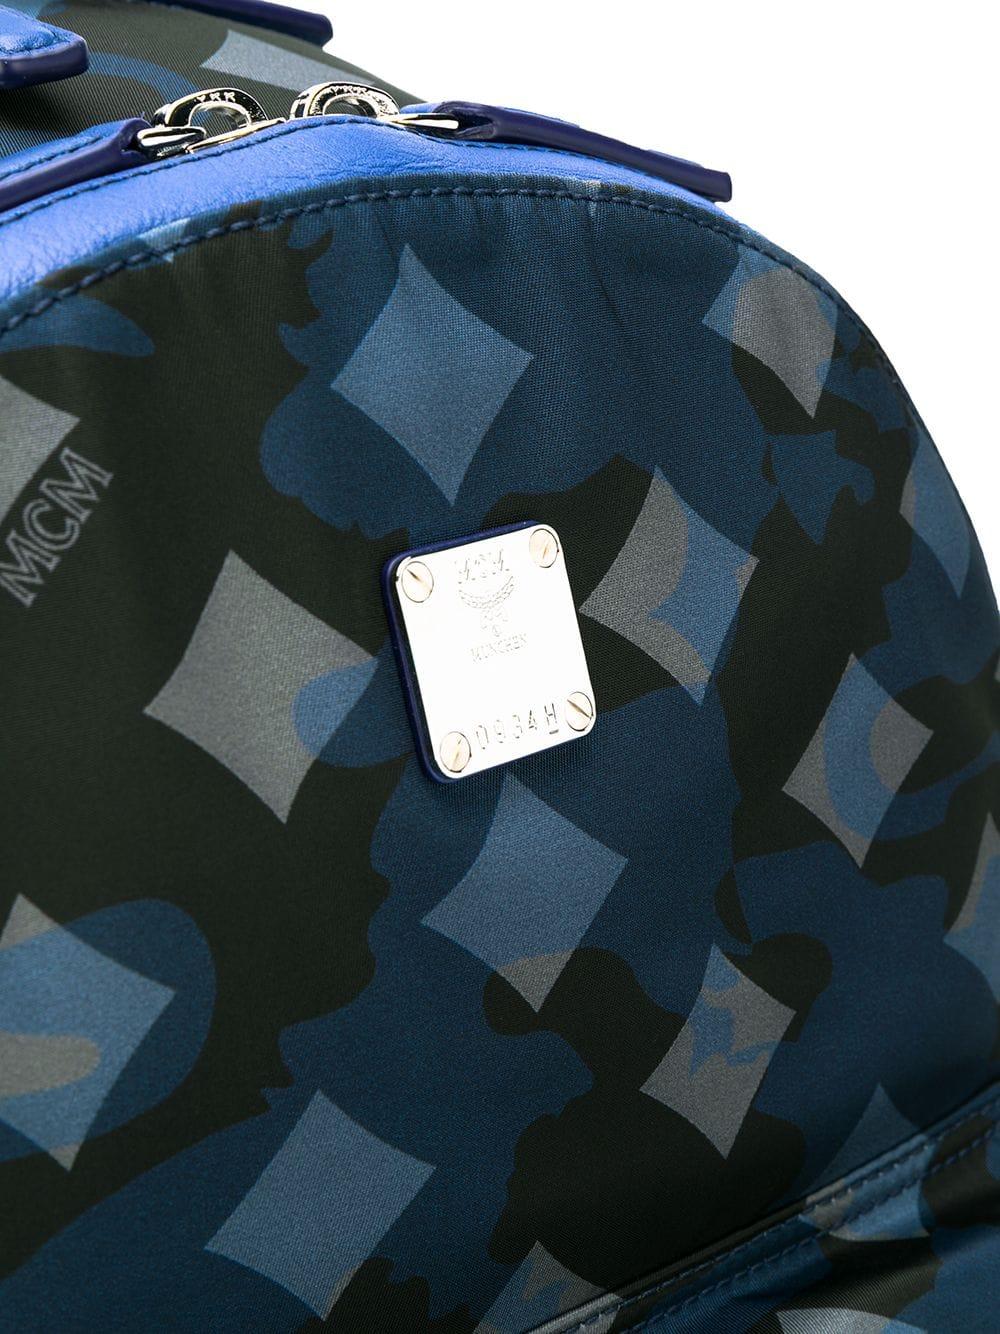 MCM Dieter Teardrop Backpack in Monogram Nylon, Navy